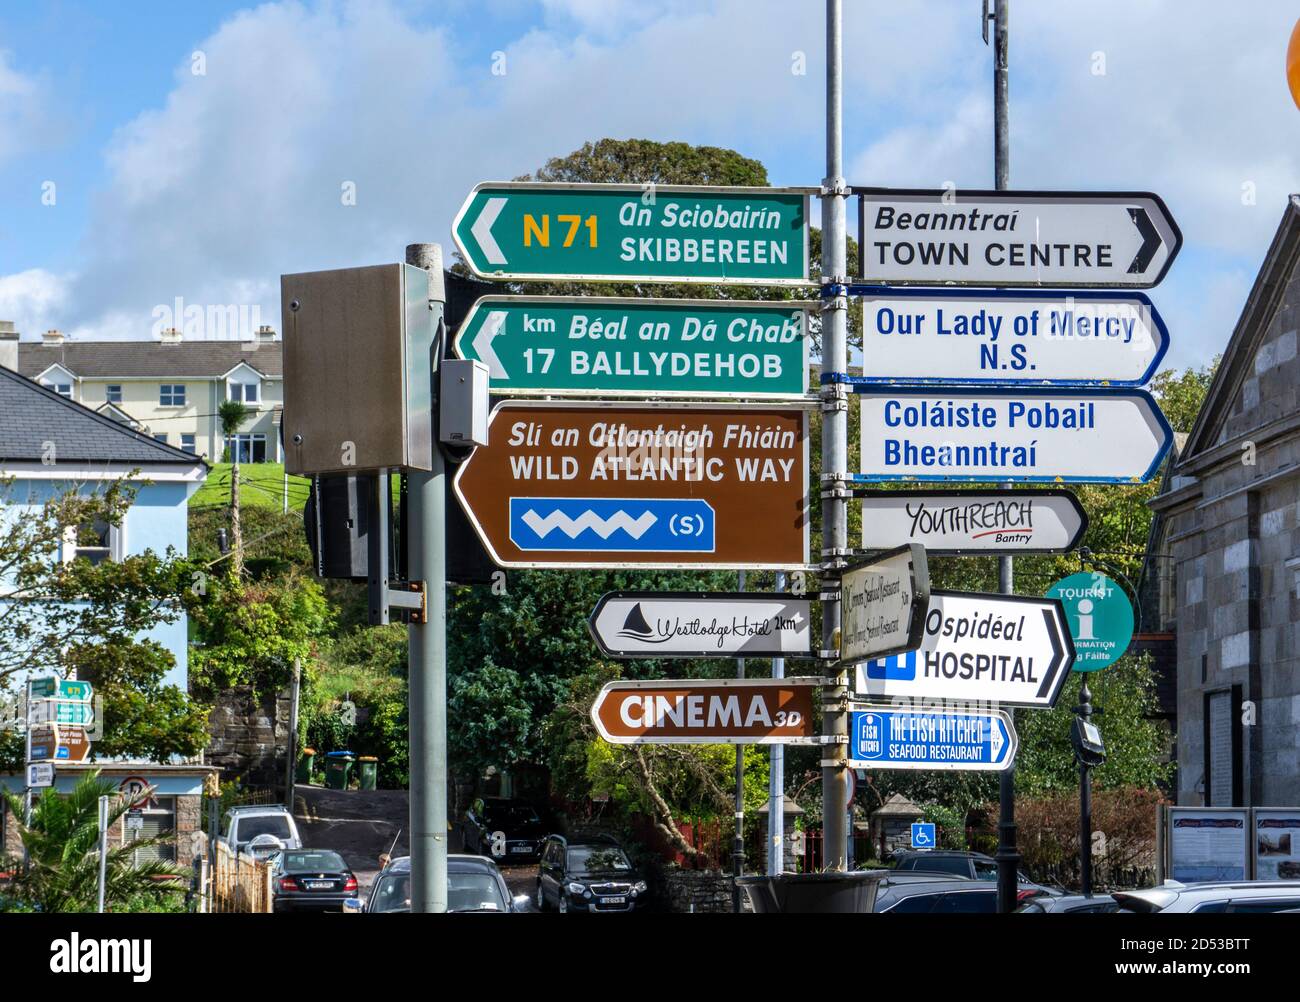 Ein Straßenschild in Bantry, County Cork, Irland mit Routenanweisungen zum Wild Atlantic Way, Ballydehob und Skibbereen und anderen Orten. Stockfoto